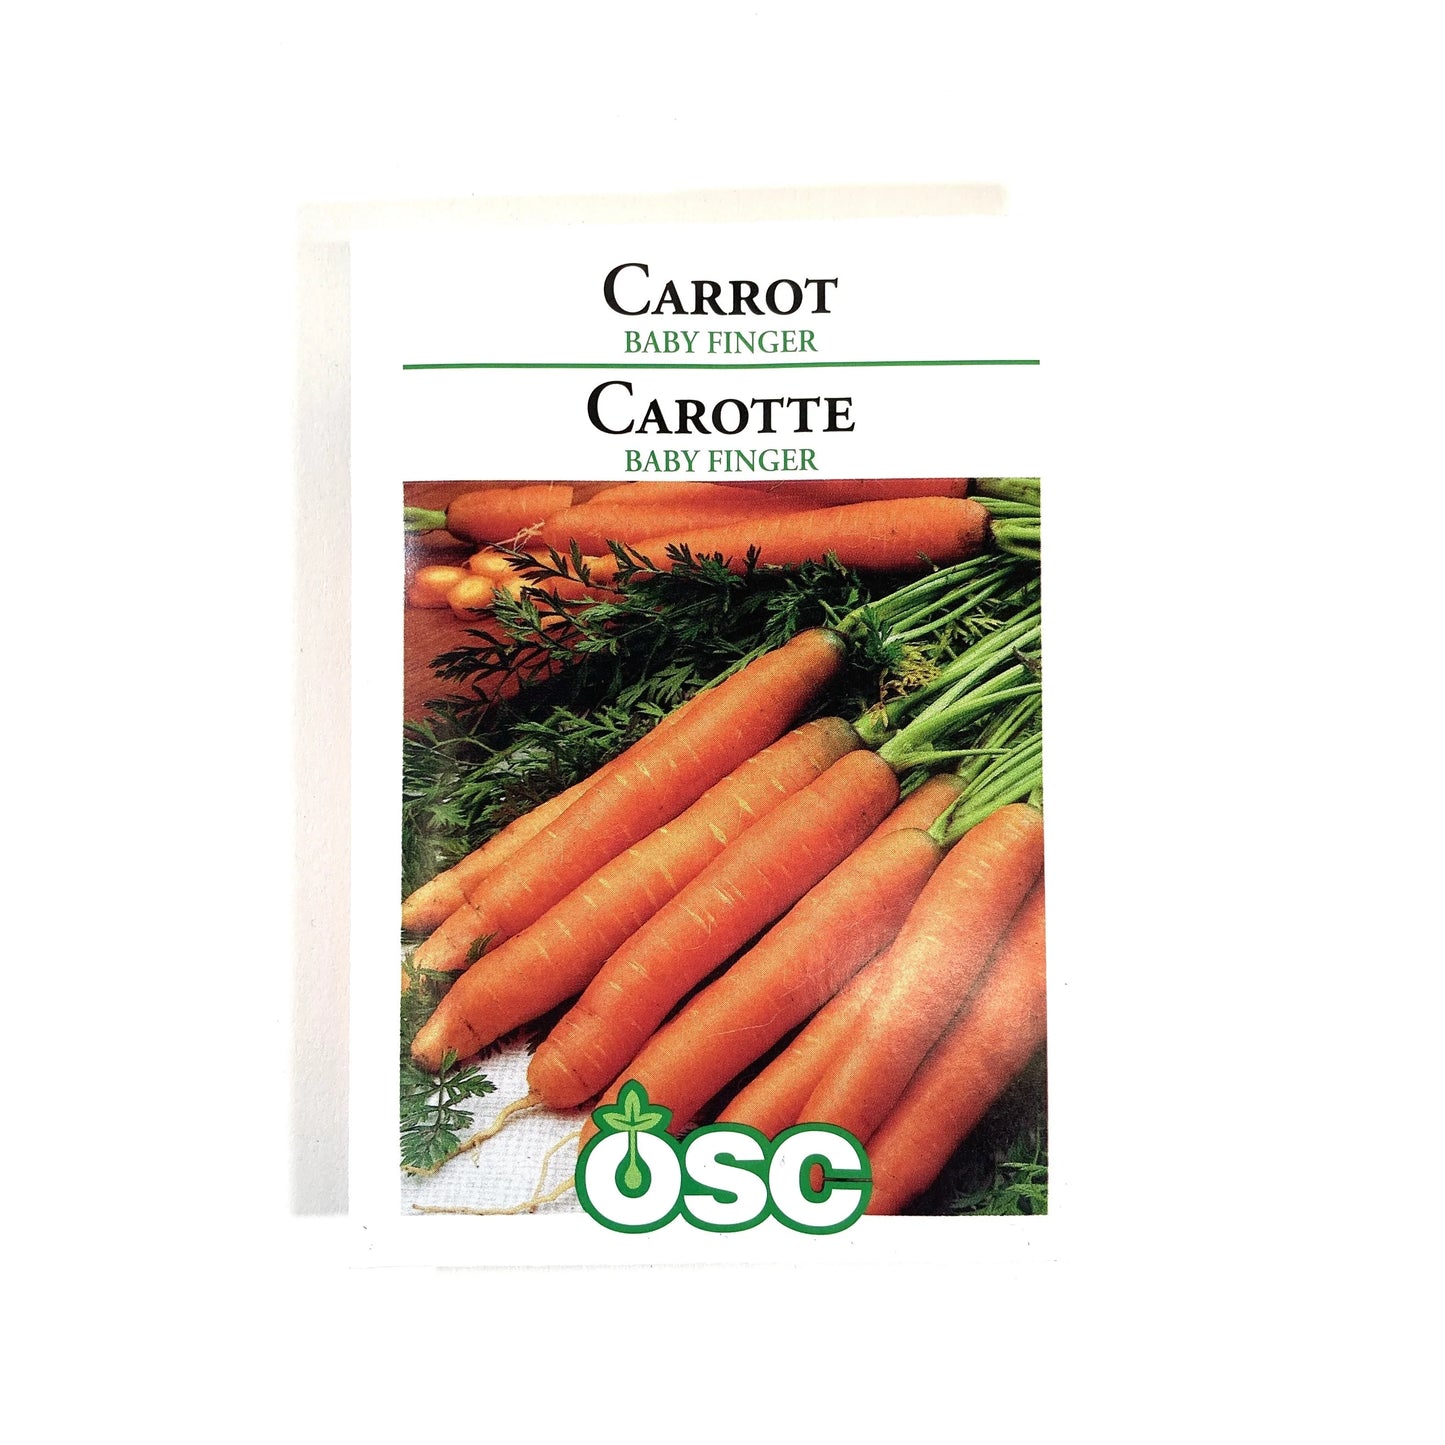 Baby Finger Carrots